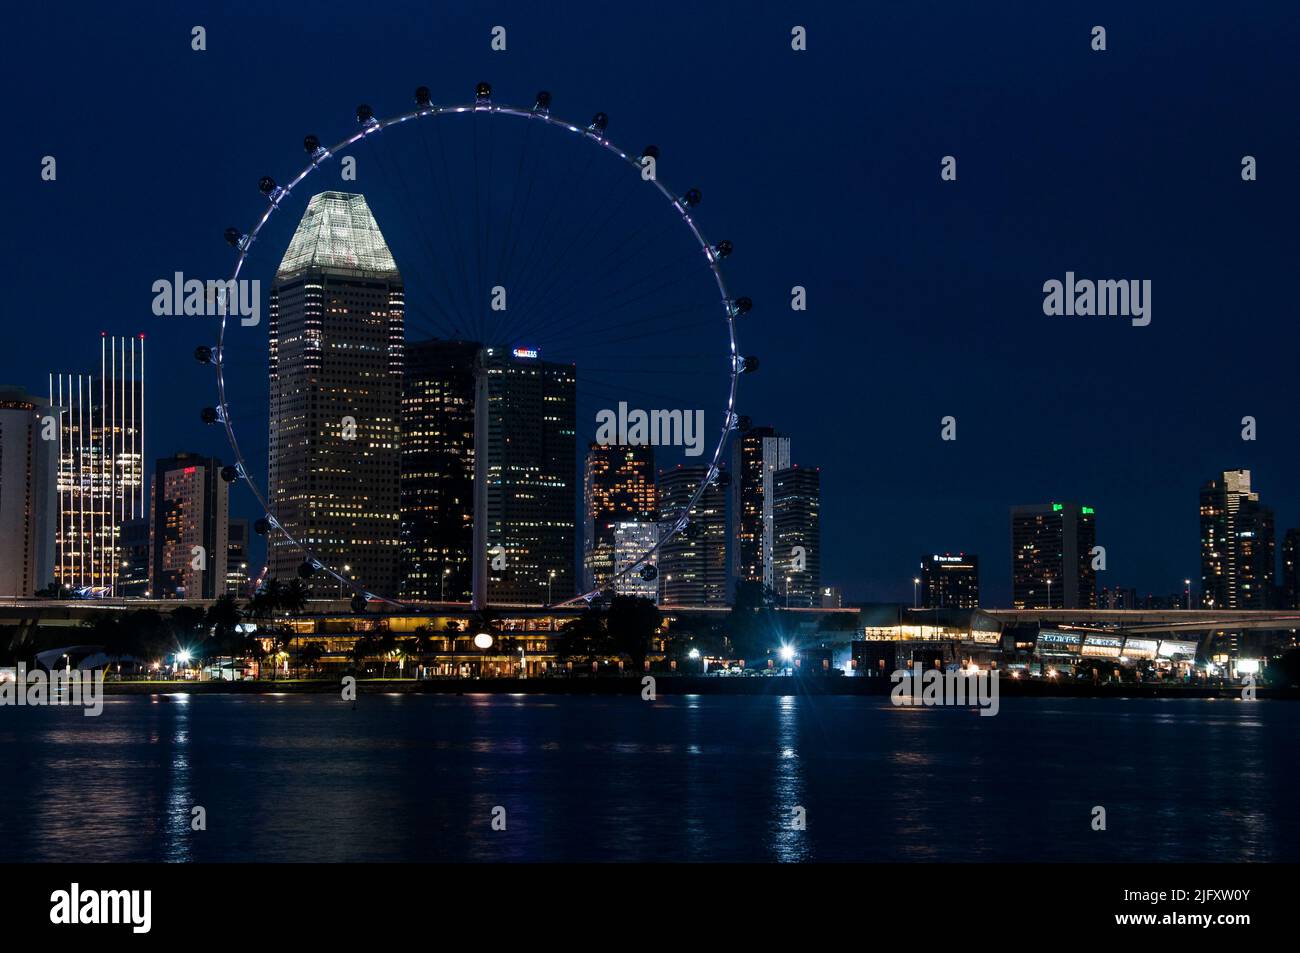 Downtown Singapore bei Nacht, mit dem Singapore Flyer Beobachtungsrad im Vordergrund Stockfoto